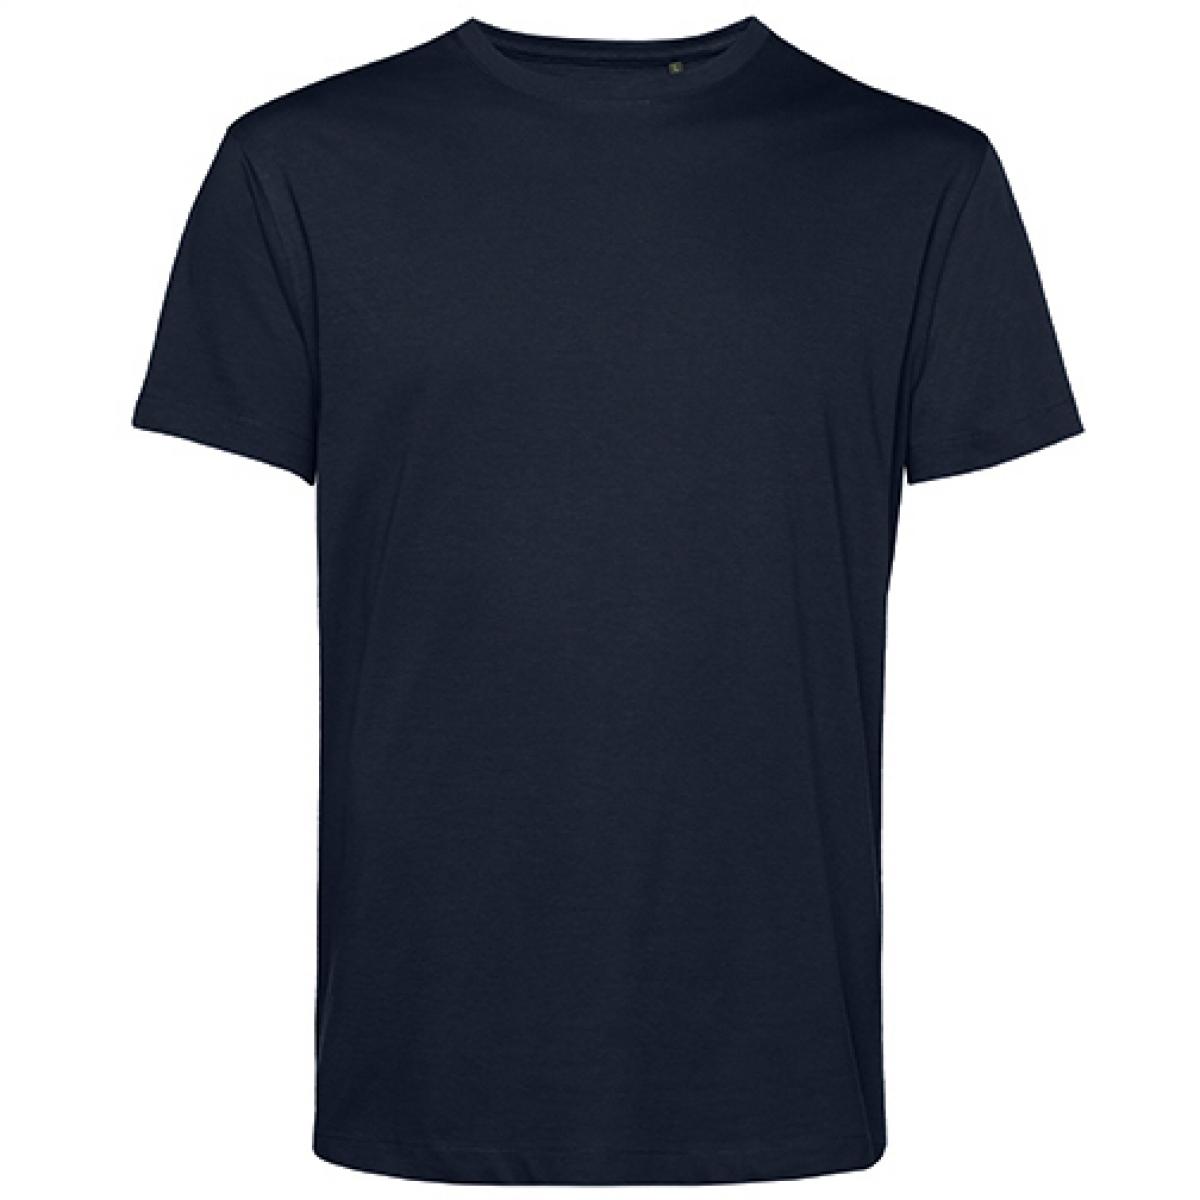 Hersteller: B&C Herstellernummer: TU01B Artikelbezeichnung: #Organic E150 T-Shirt - 100 % sanforisierte Bio-Baumwolle Farbe: Navy Blue